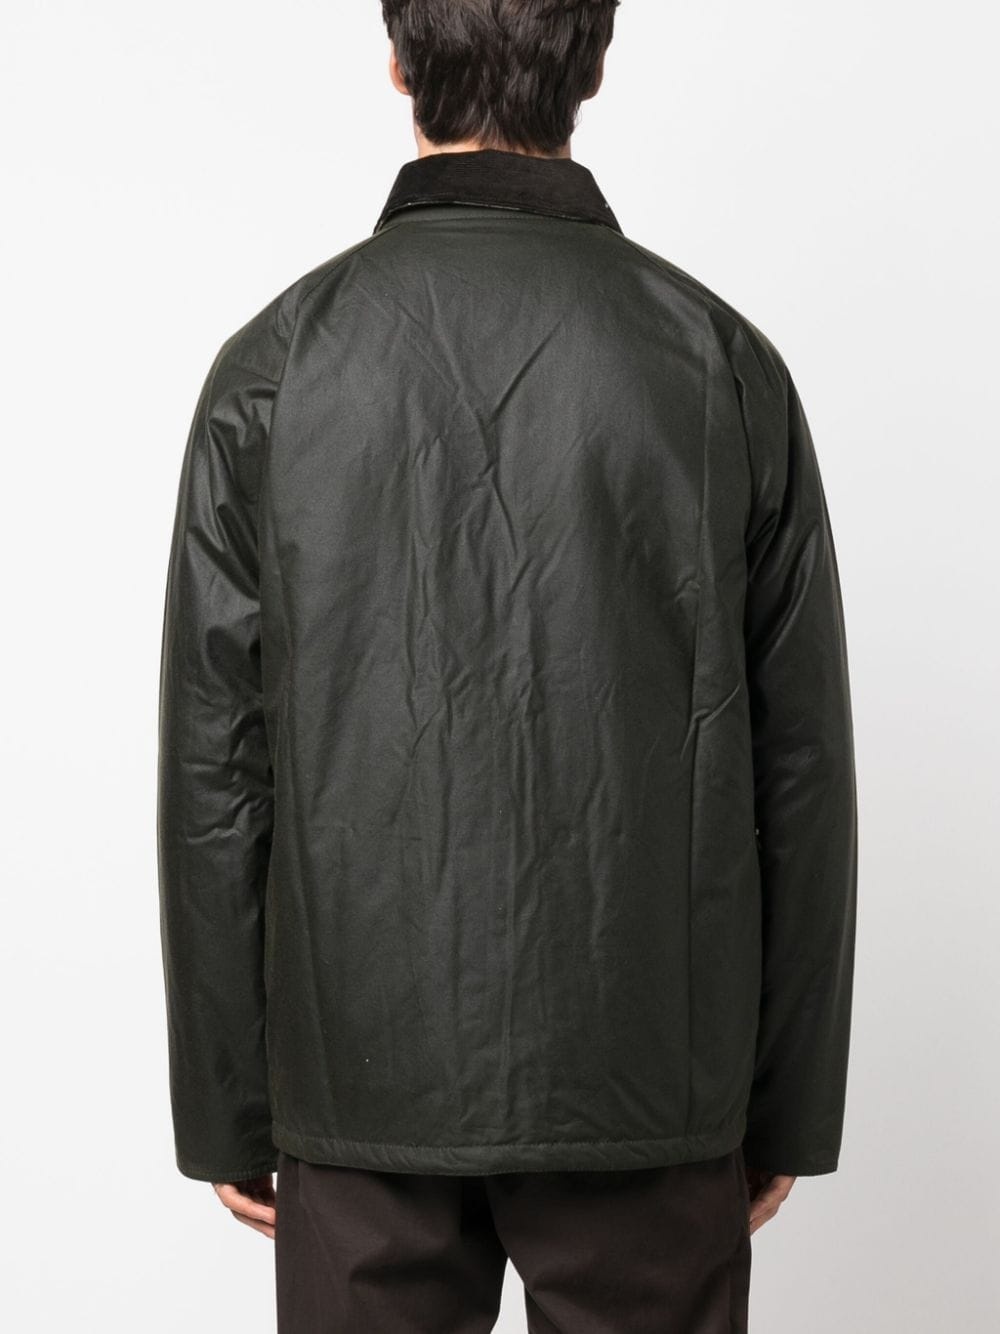 Ambleside coated cotton jacket - 4